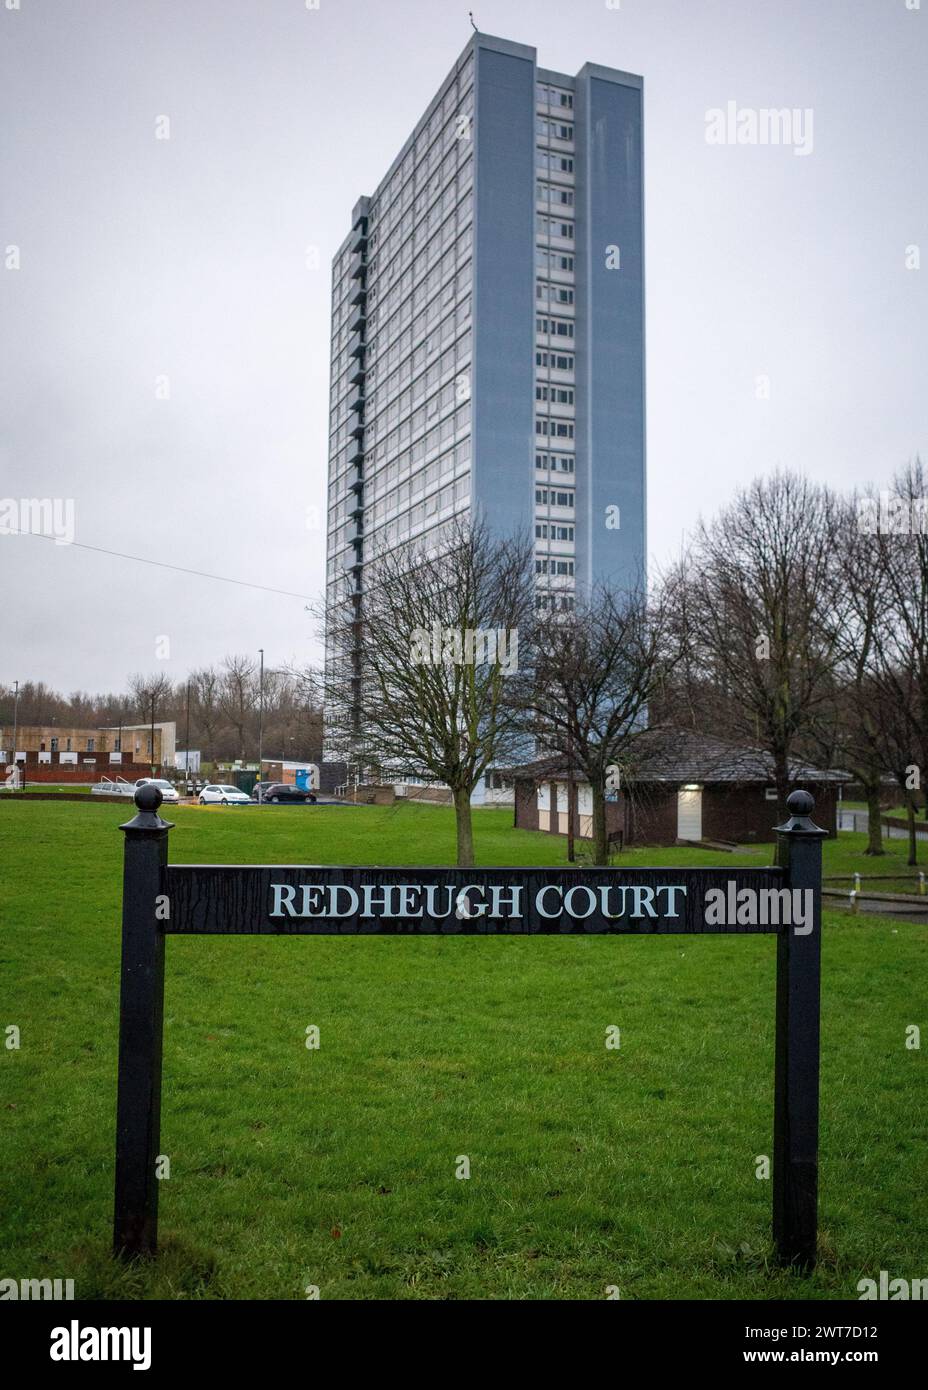 Bloc de tour bleu de grande hauteur et panneau de rue, Redheugh court à Gateshead, nord-est de l'Angleterre, Royaume-Uni. Banque D'Images